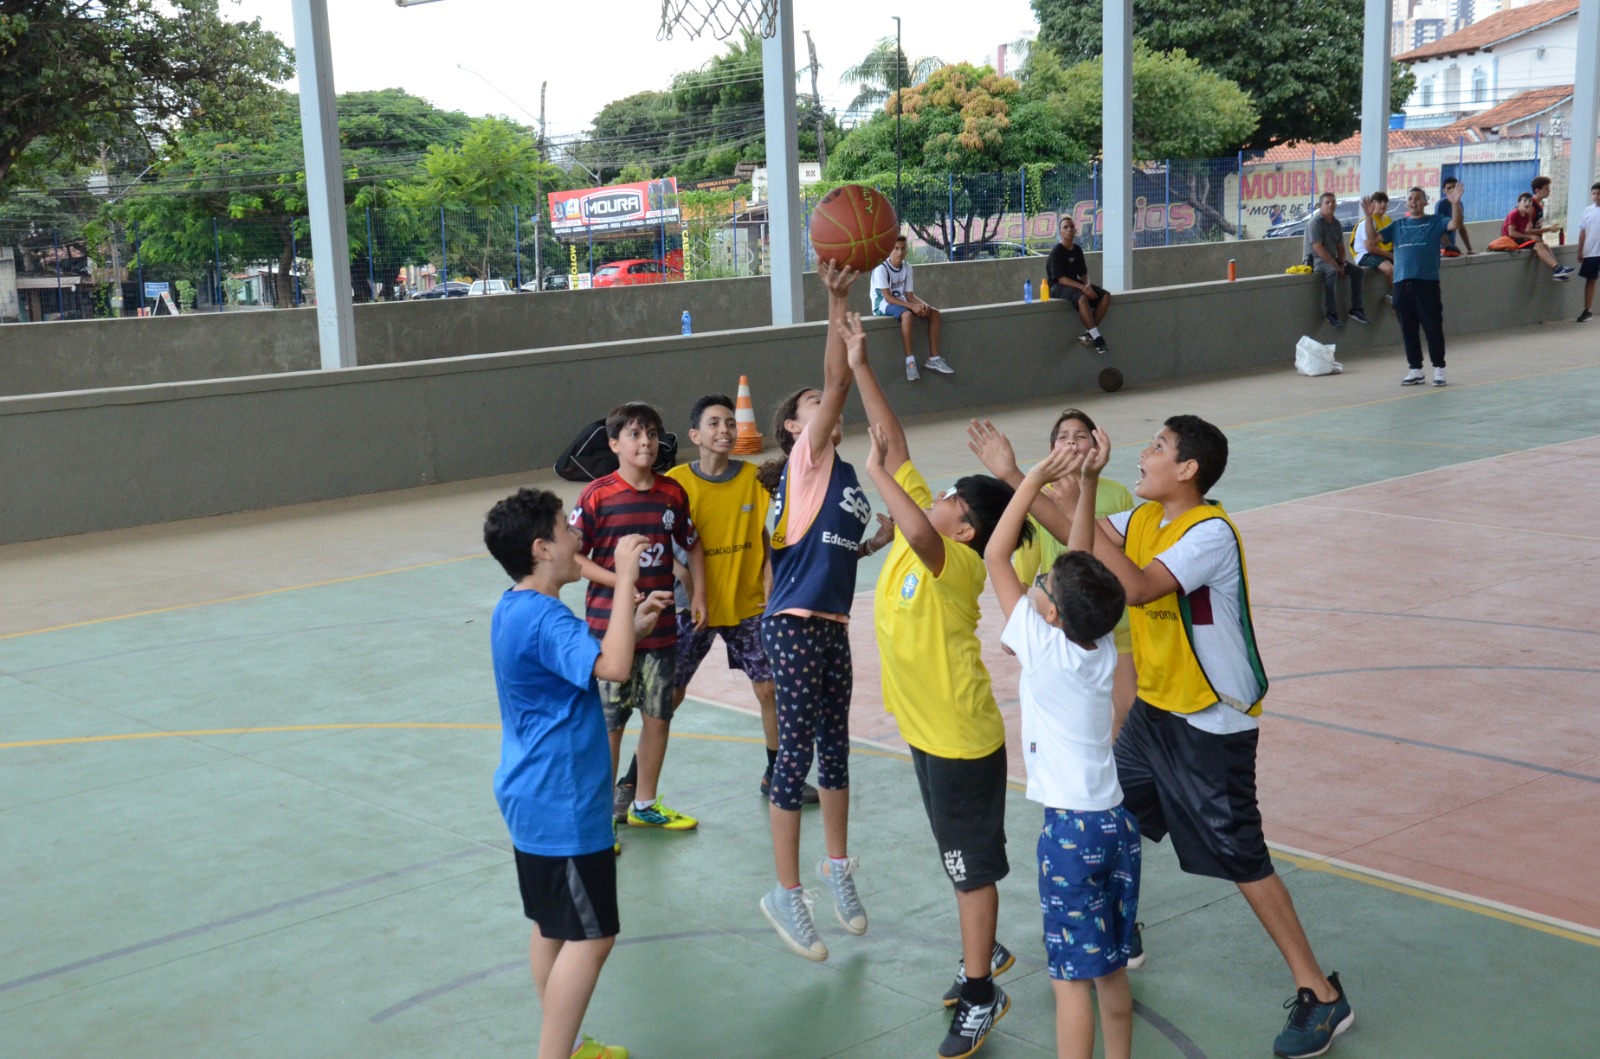 Modalidades como vôlei, basquete, box e natação estão disponíveis gratuitamente para a comunidade na Praça de Esporte do Setor Pedro Ludovico